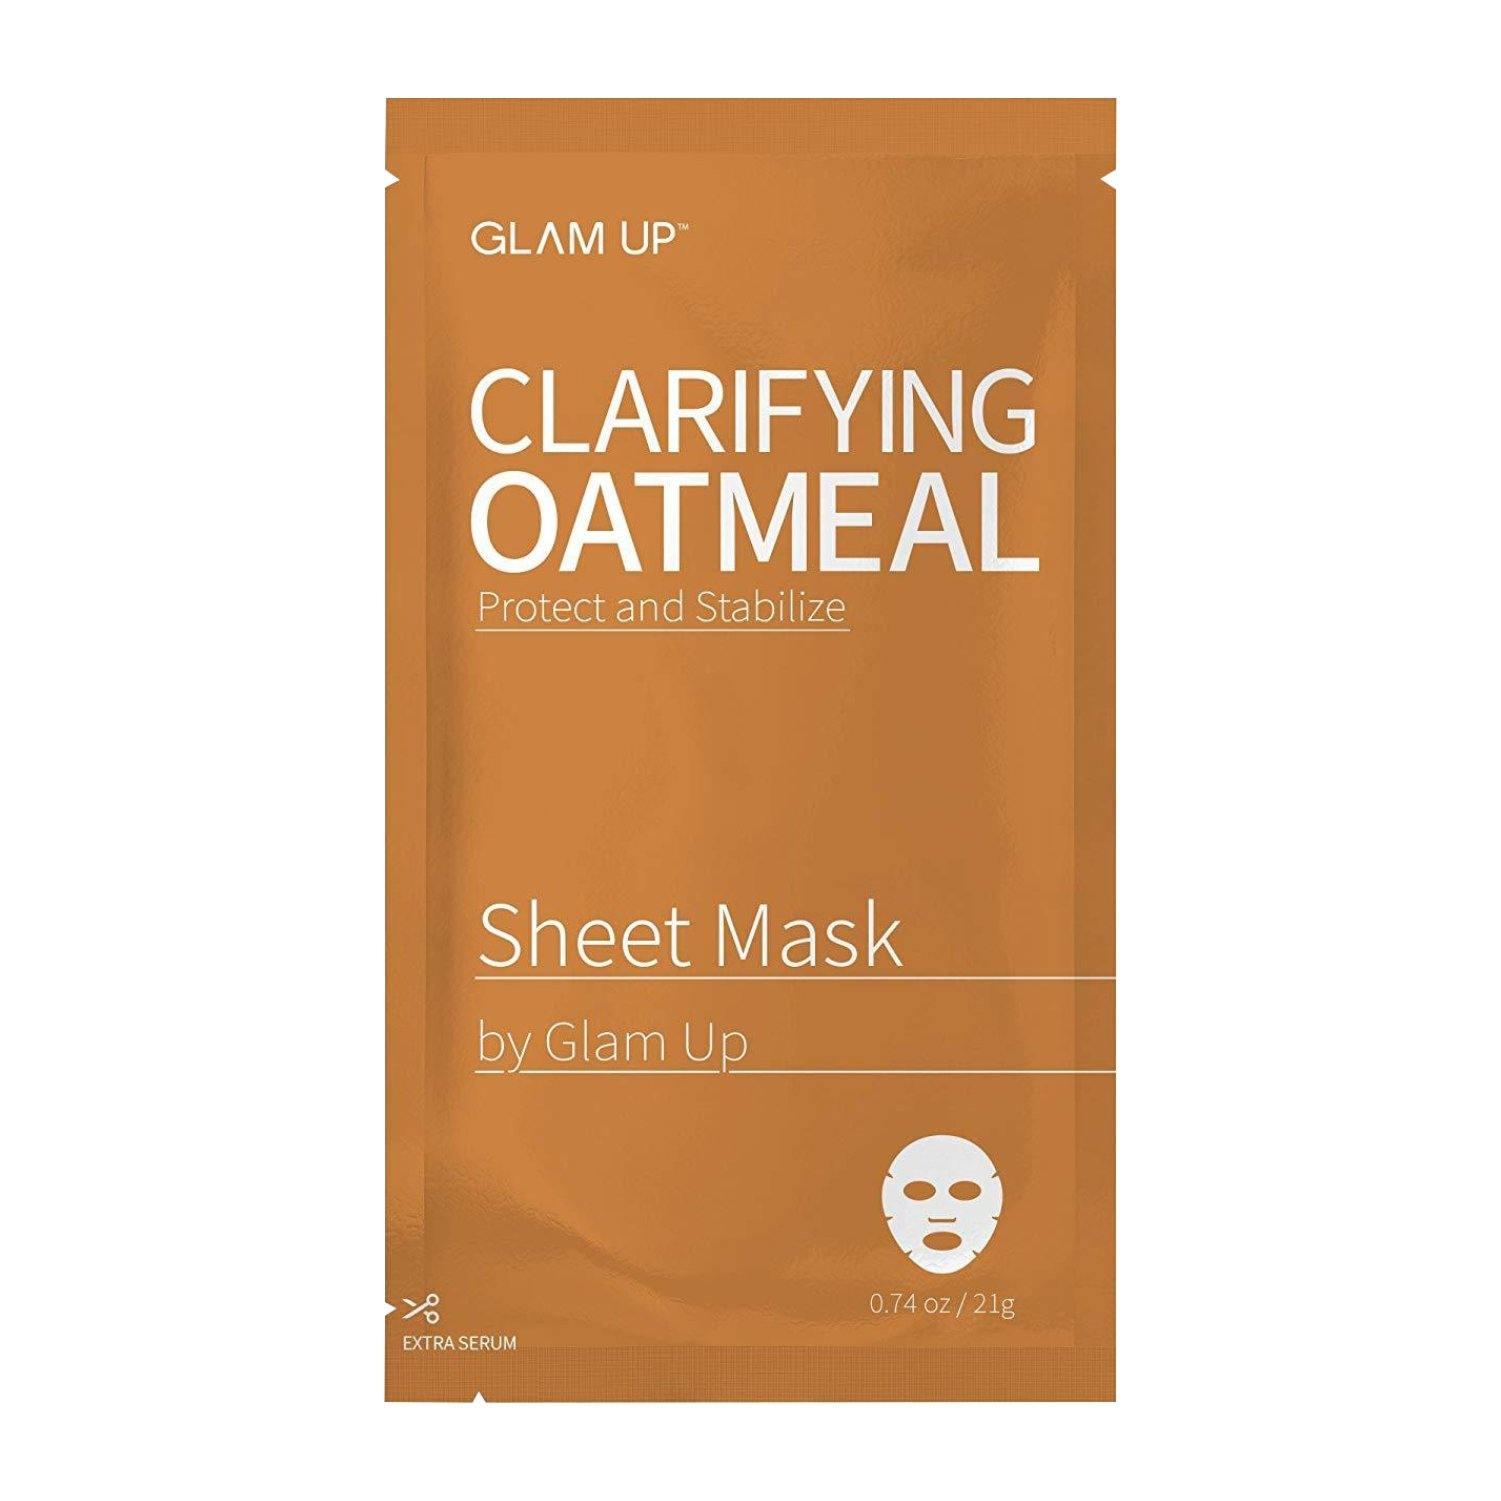 Clarifying Oatmeal Sheet Mask